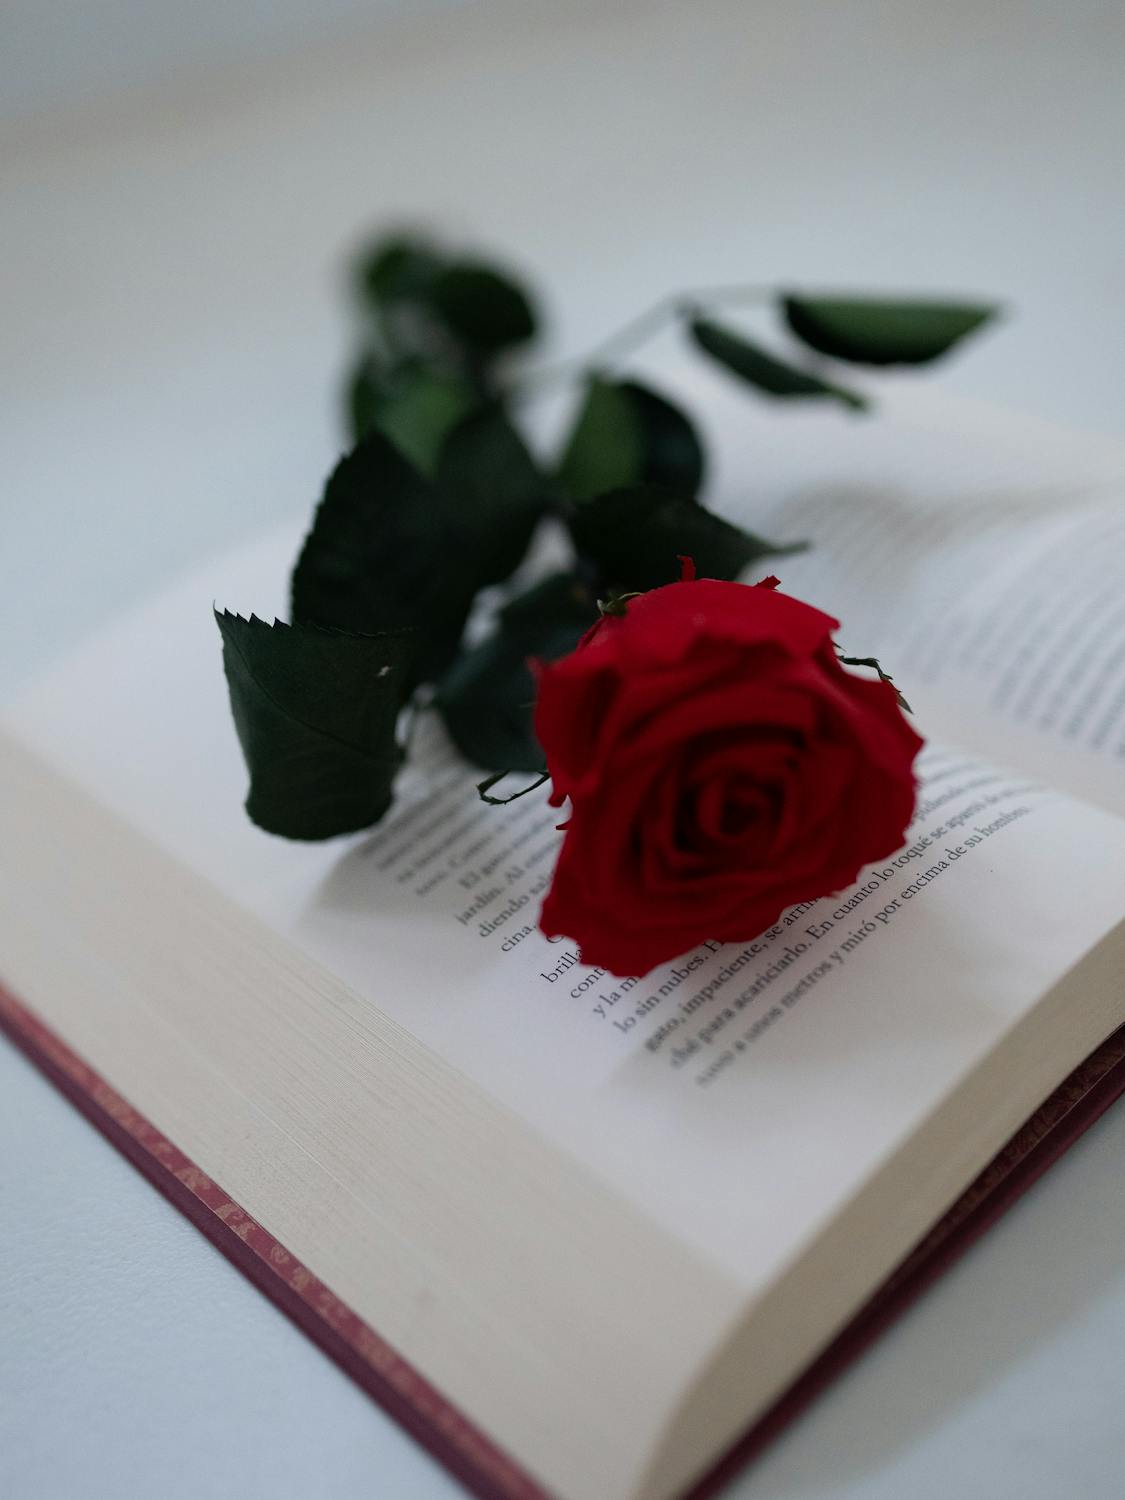 爱情的书 玫瑰 书 - Pixabay上的免费照片 - Pixabay